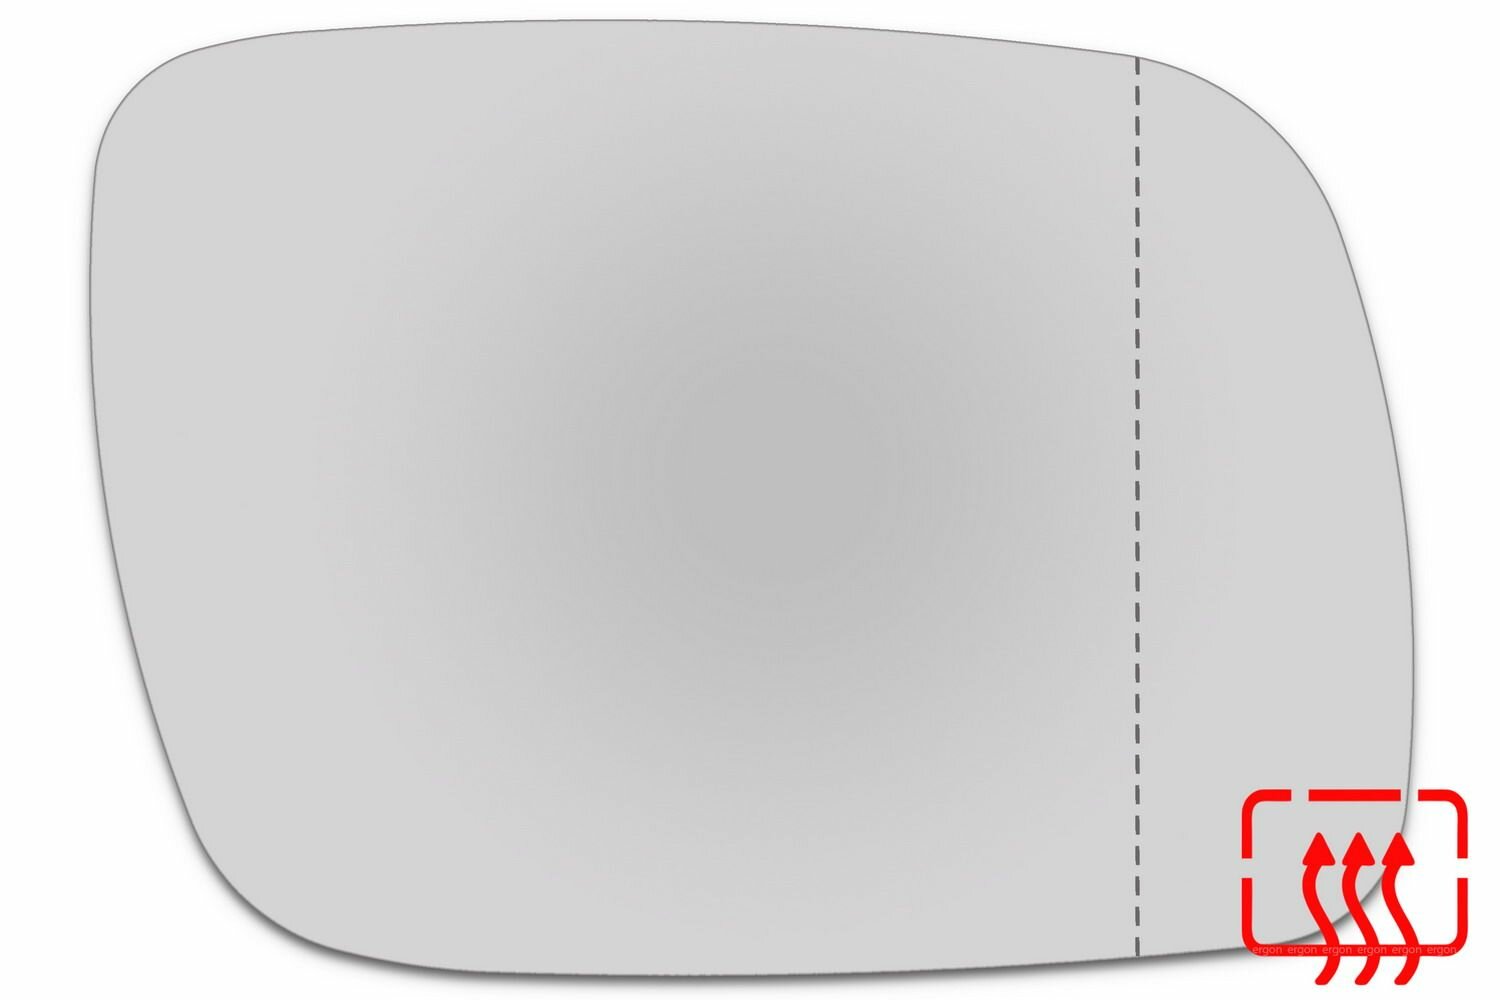 Зеркальный элемент правый VOLKSWAGEN Touareg I c 2003 по 2007 год выпуска асферика нейтральный c обогревом